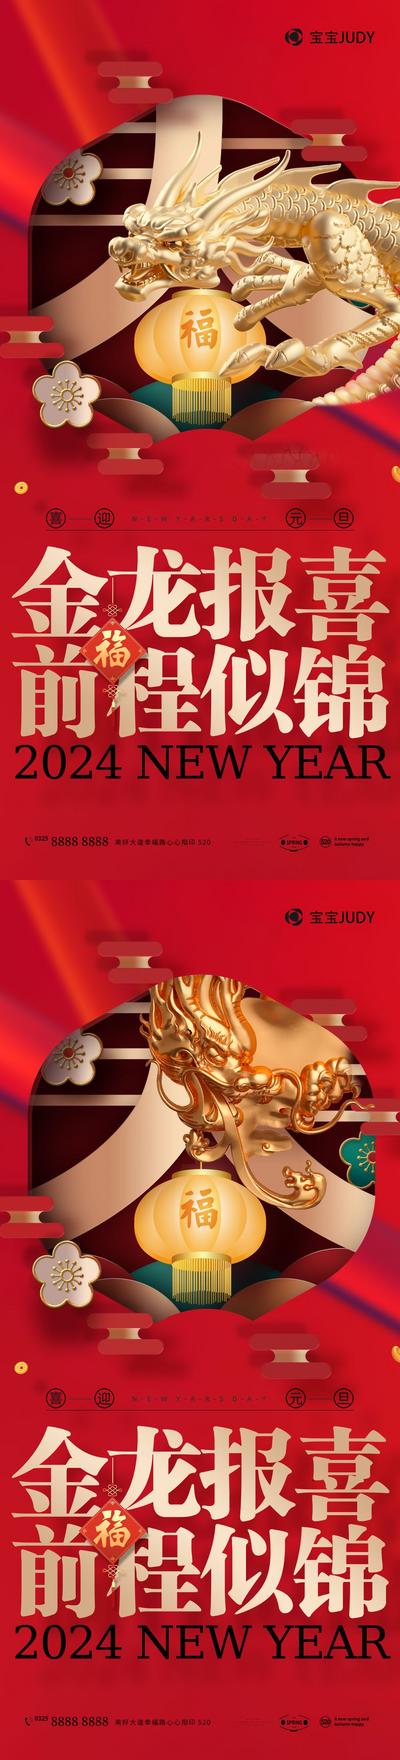 南门网 广告 海报 节日 元旦 龙年 2024 龙 创意 中式 系列 尊贵 奢华